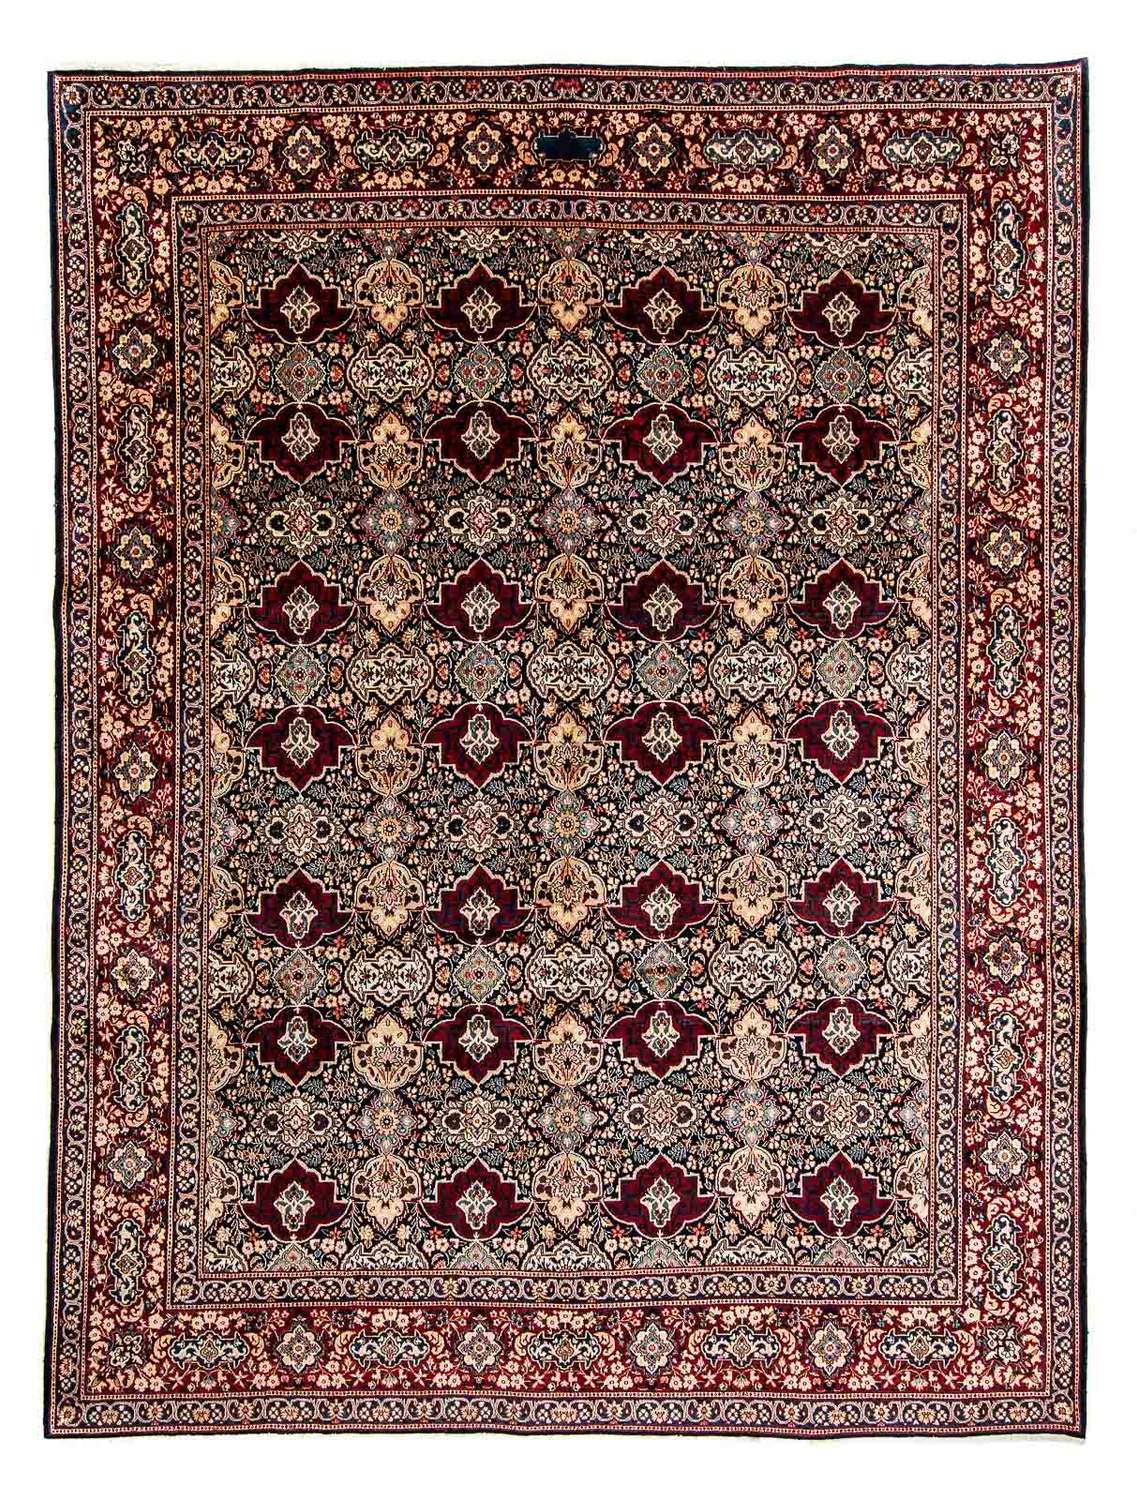 Persisk teppe - klassisk - 393 x 299 cm - mørk rød